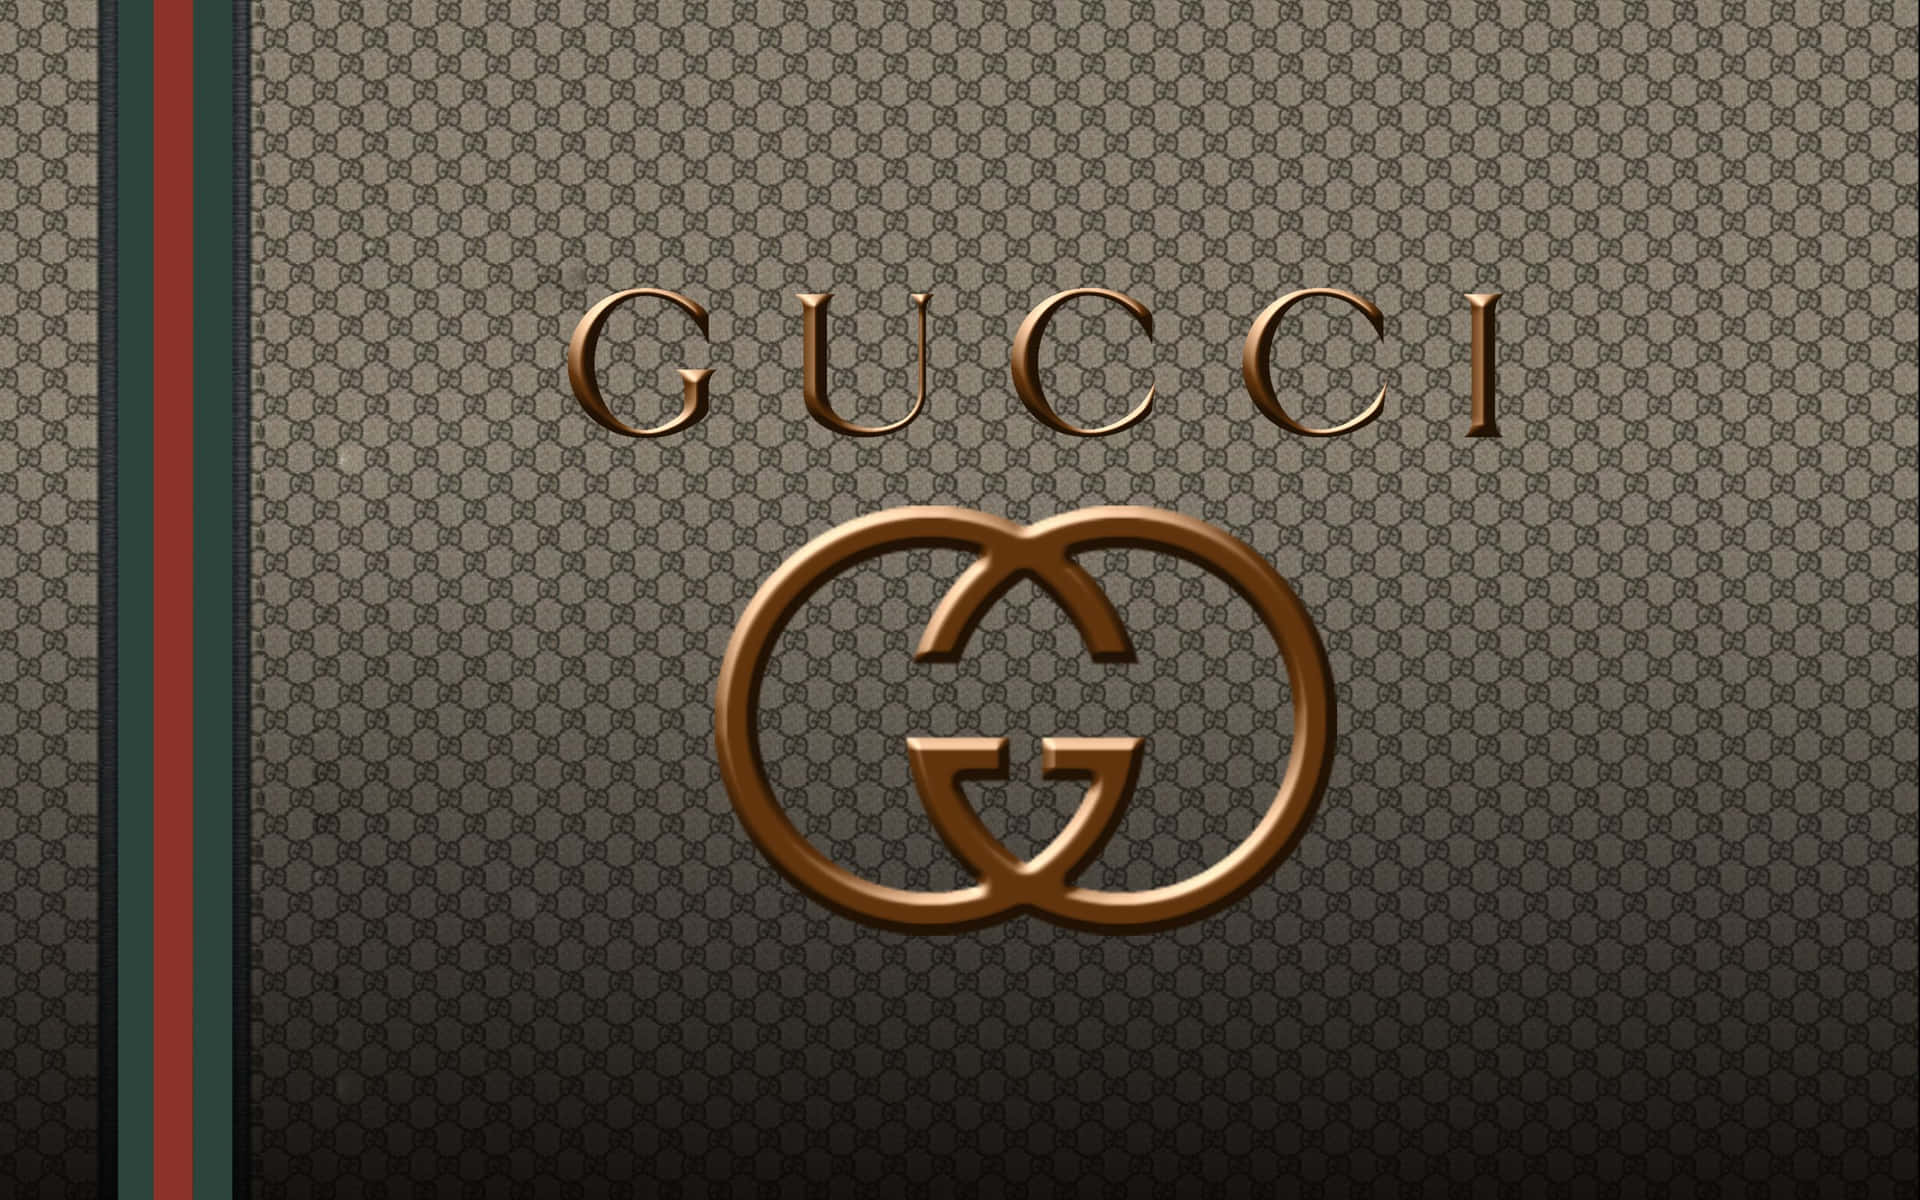 Exquisitoestilo De Fondo De La Marca De Moda Gucci